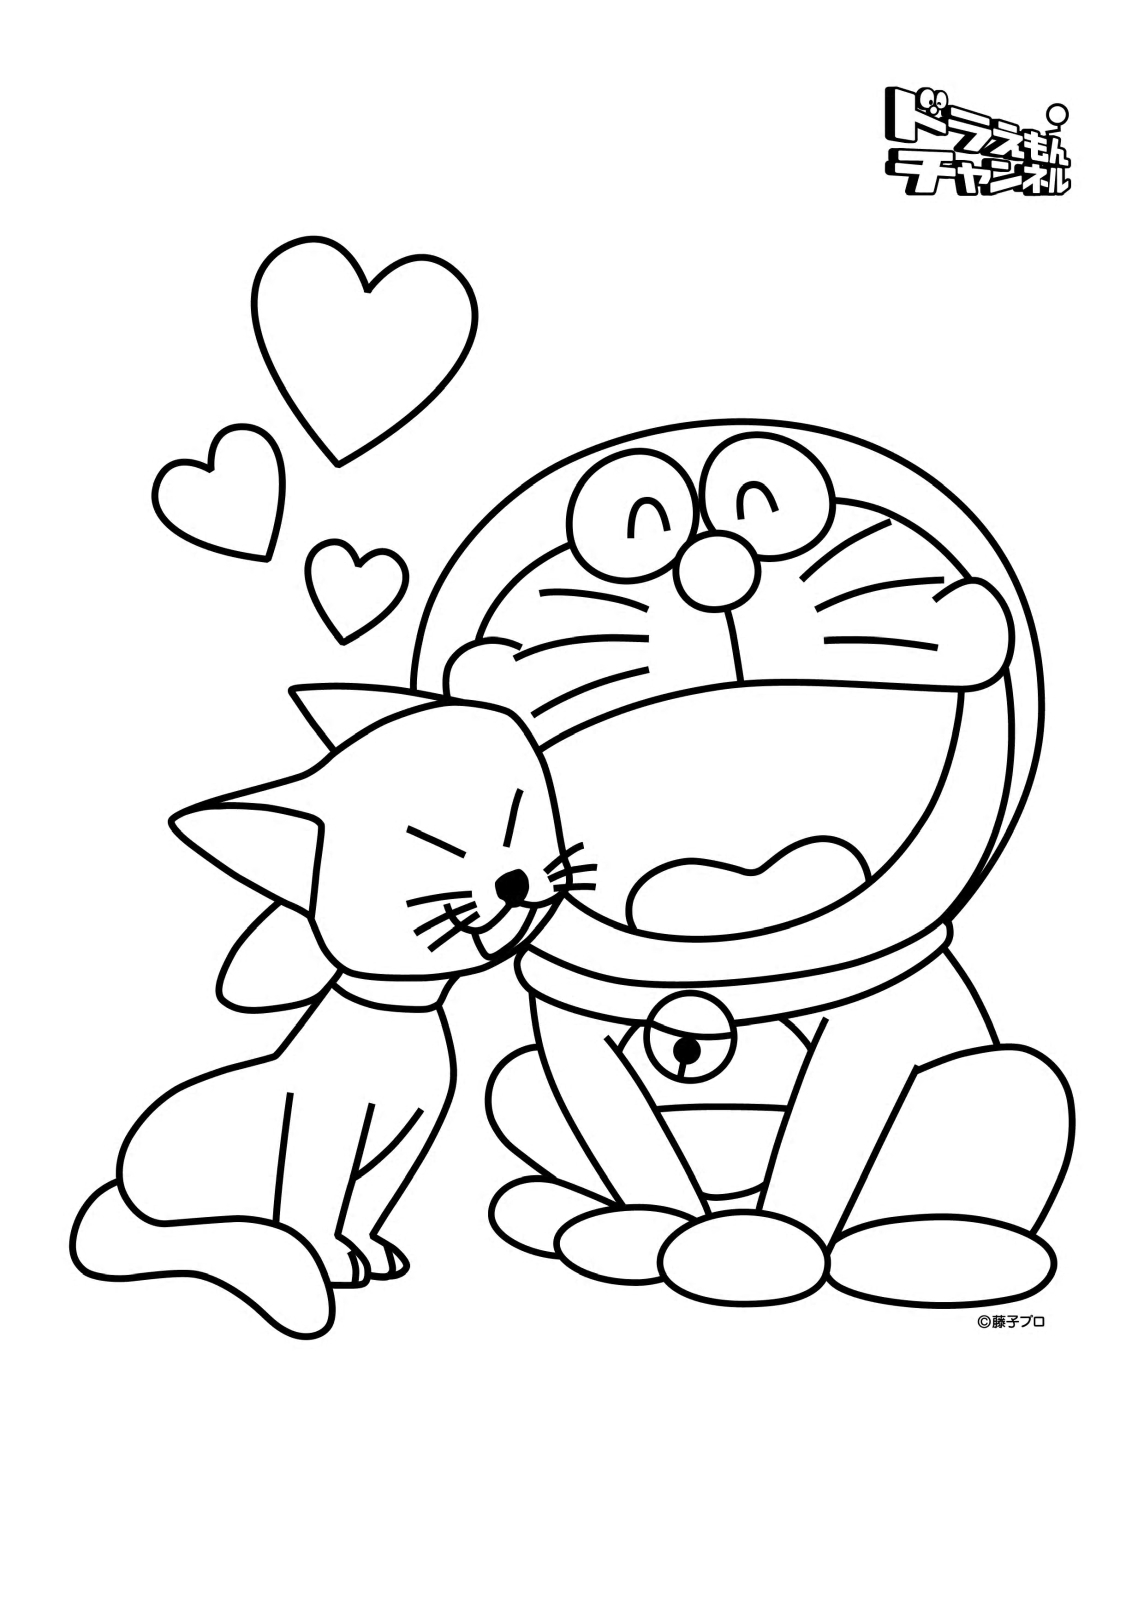 Doraemon und seine Freundin Mimi aus Doraemon